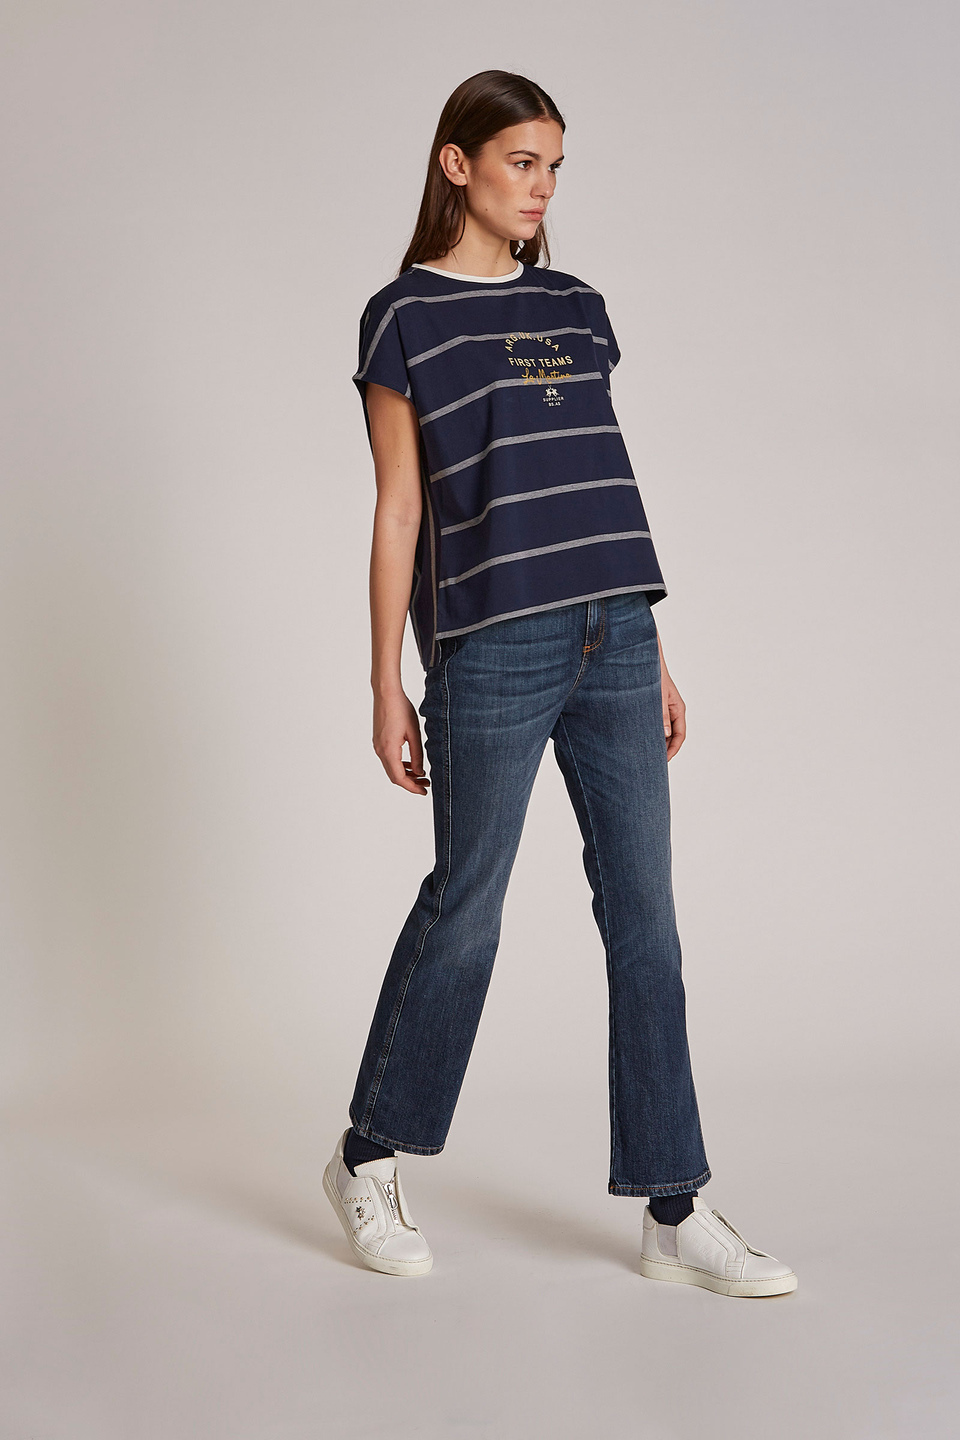 Pantalone da donna modello 5 tasche in cotone regular fit - La Martina - Official Online Shop